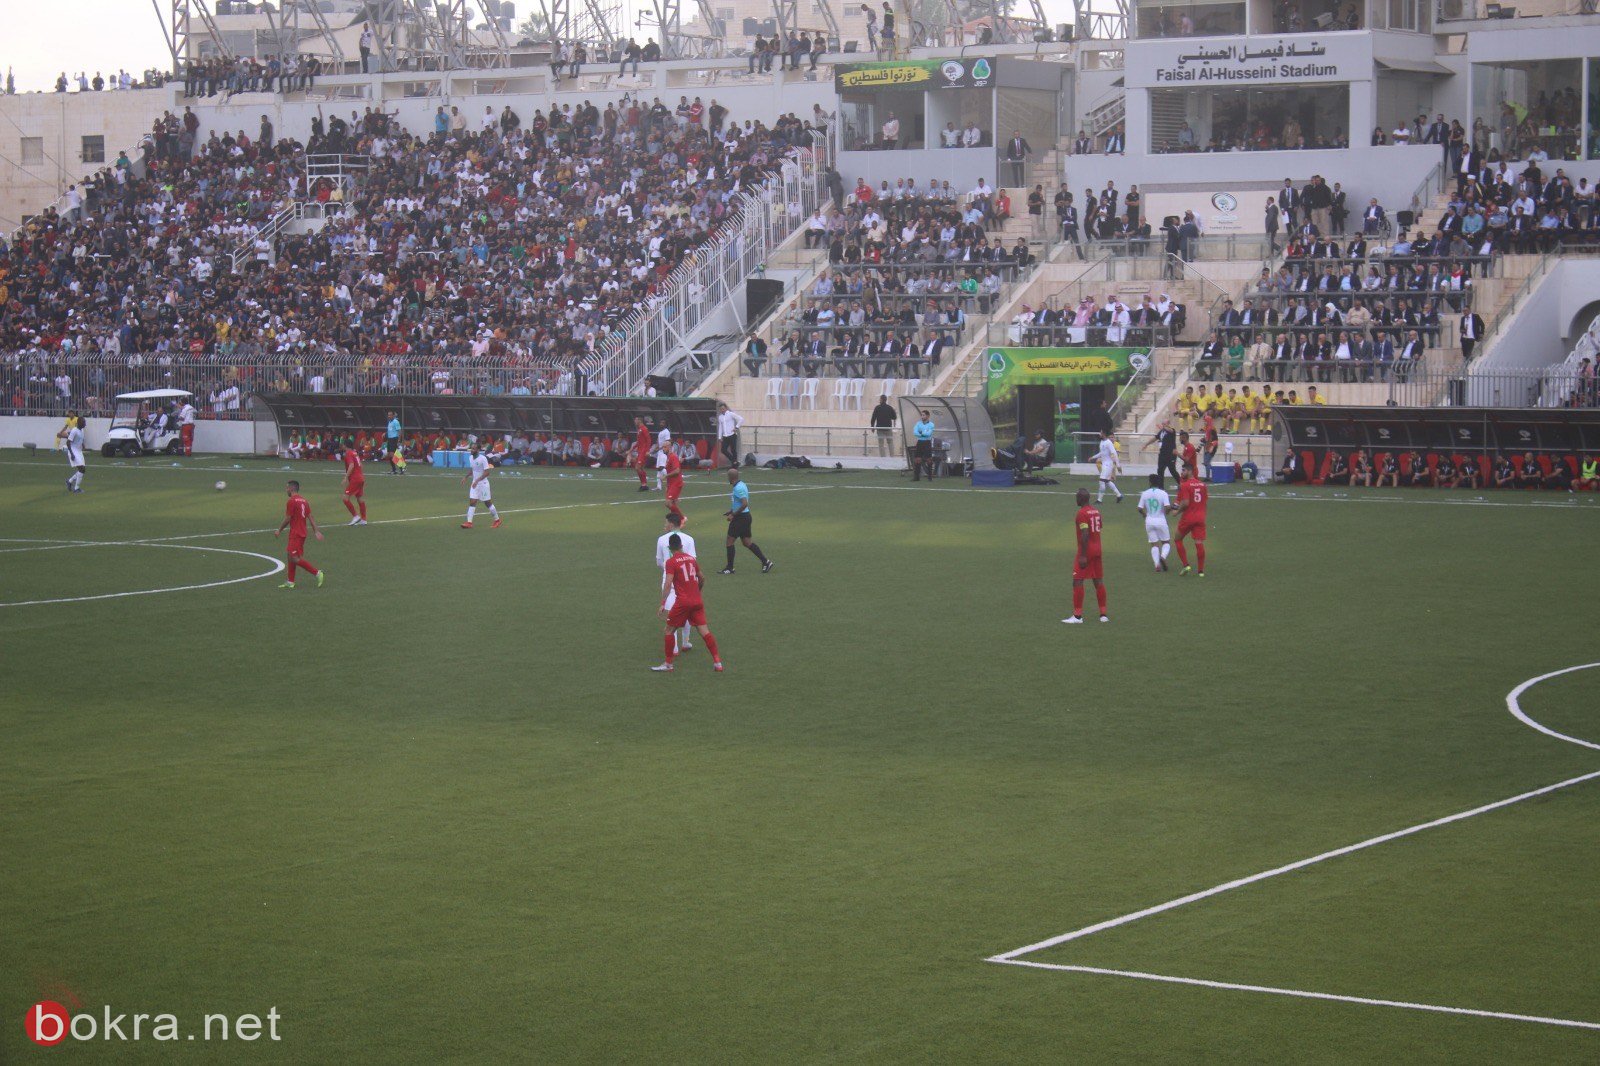 صور اضافية من مباراة فلسطين والسعودية-14